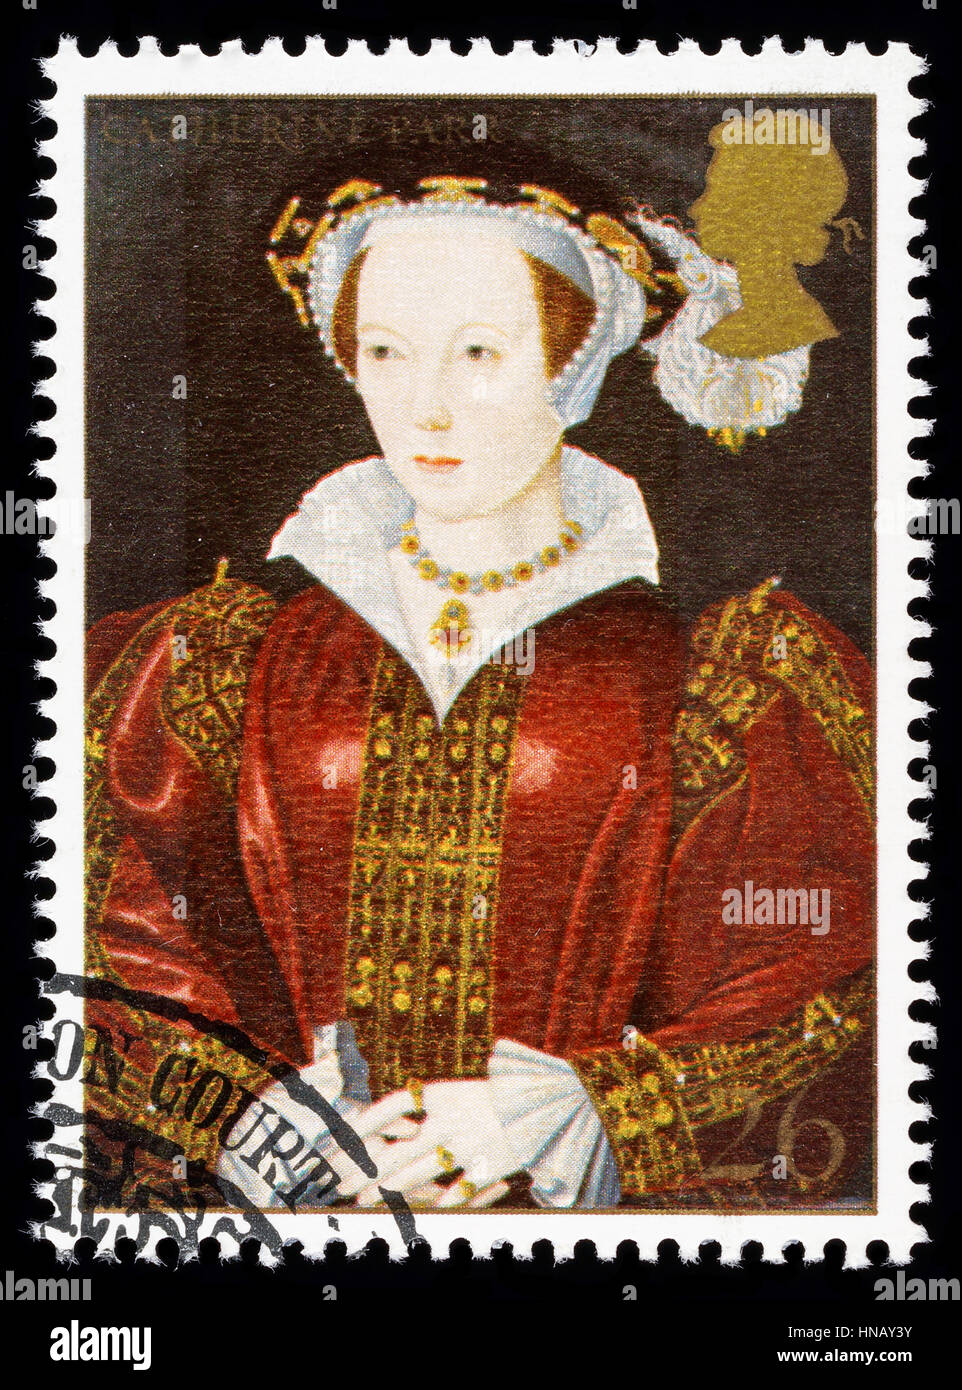 Vereinigtes Königreich - CIRCA 1997: verwendete Briefmarke gedruckt in Großbritannien zum Gedenken an König Henry 8. zeigt Catherine Parr eine seiner vielen Frauen Stockfoto